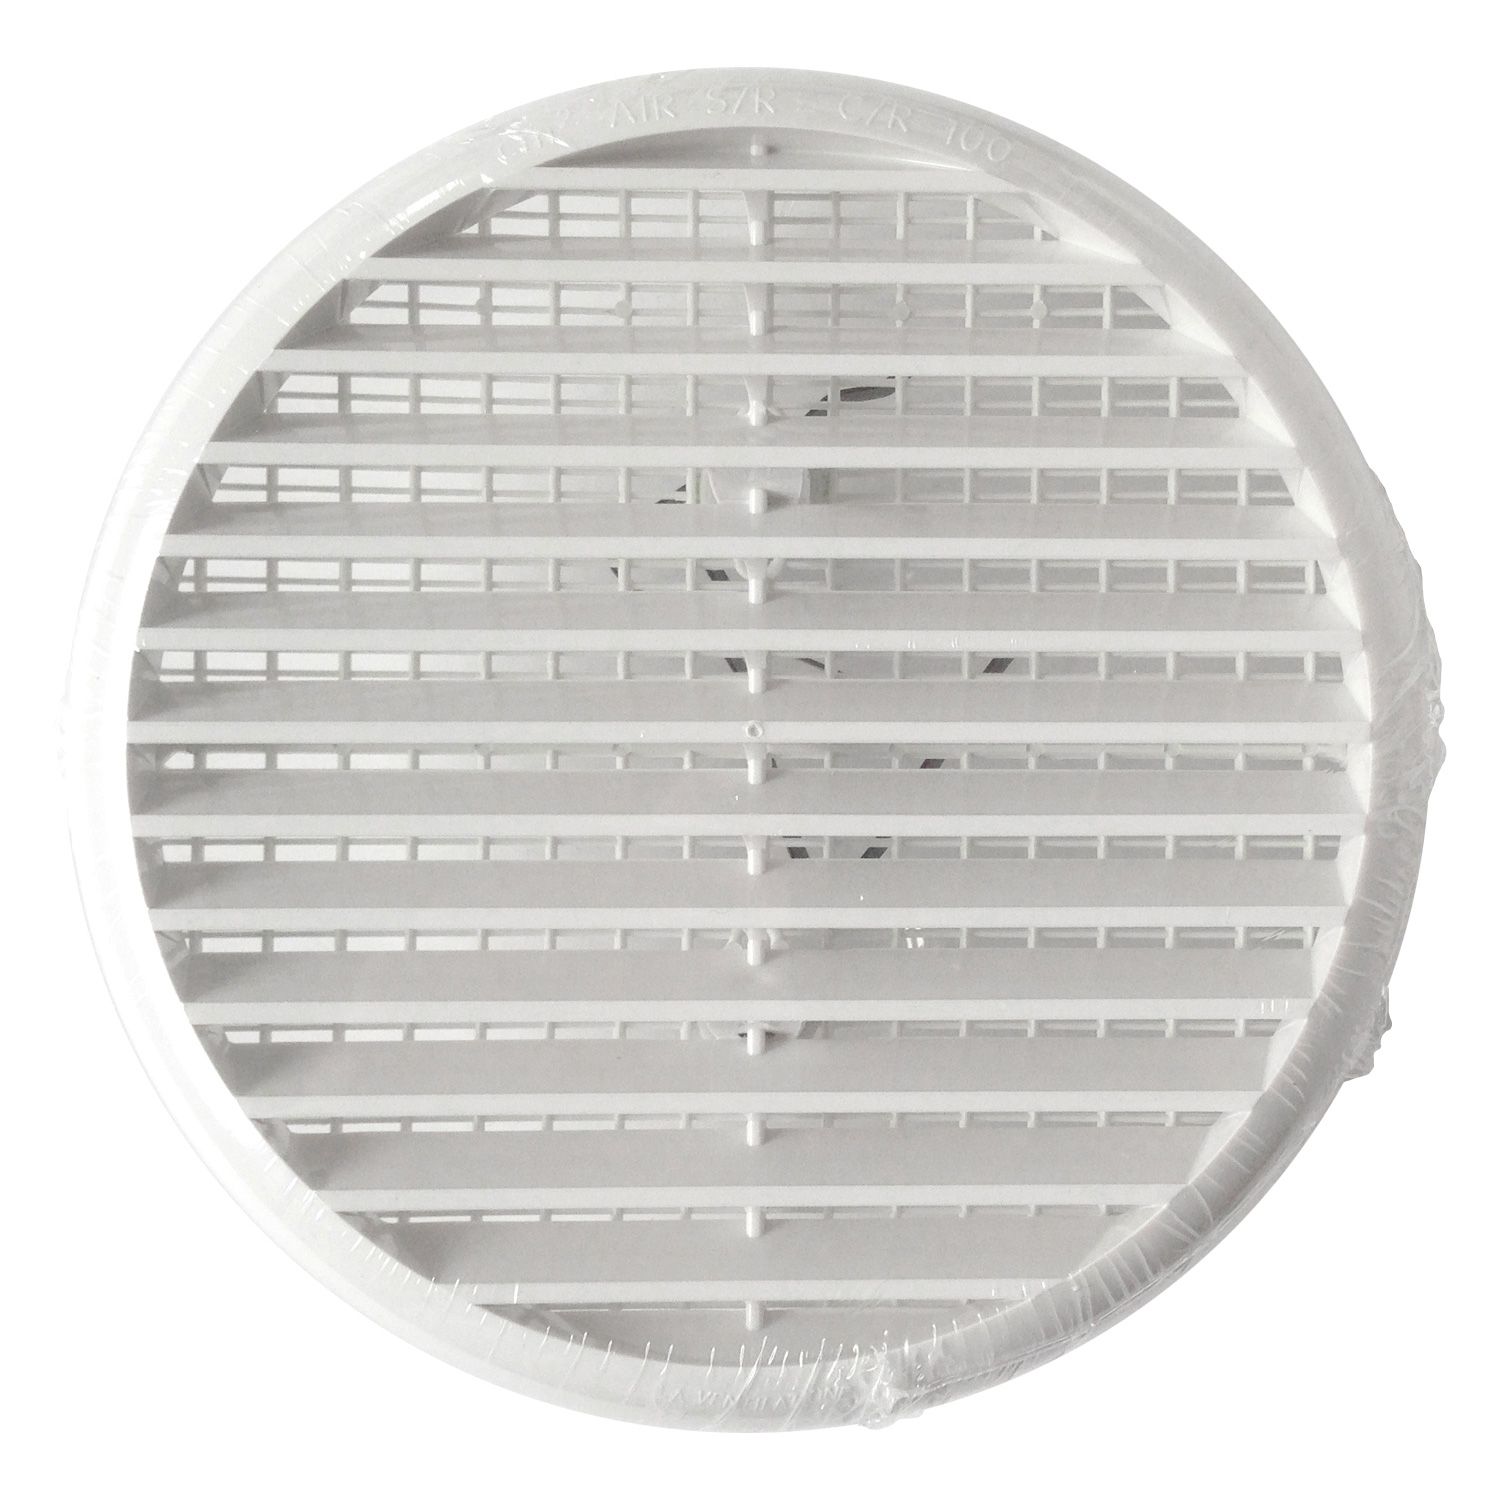 Grille de ventilation en PVC blanc réglable 75x125